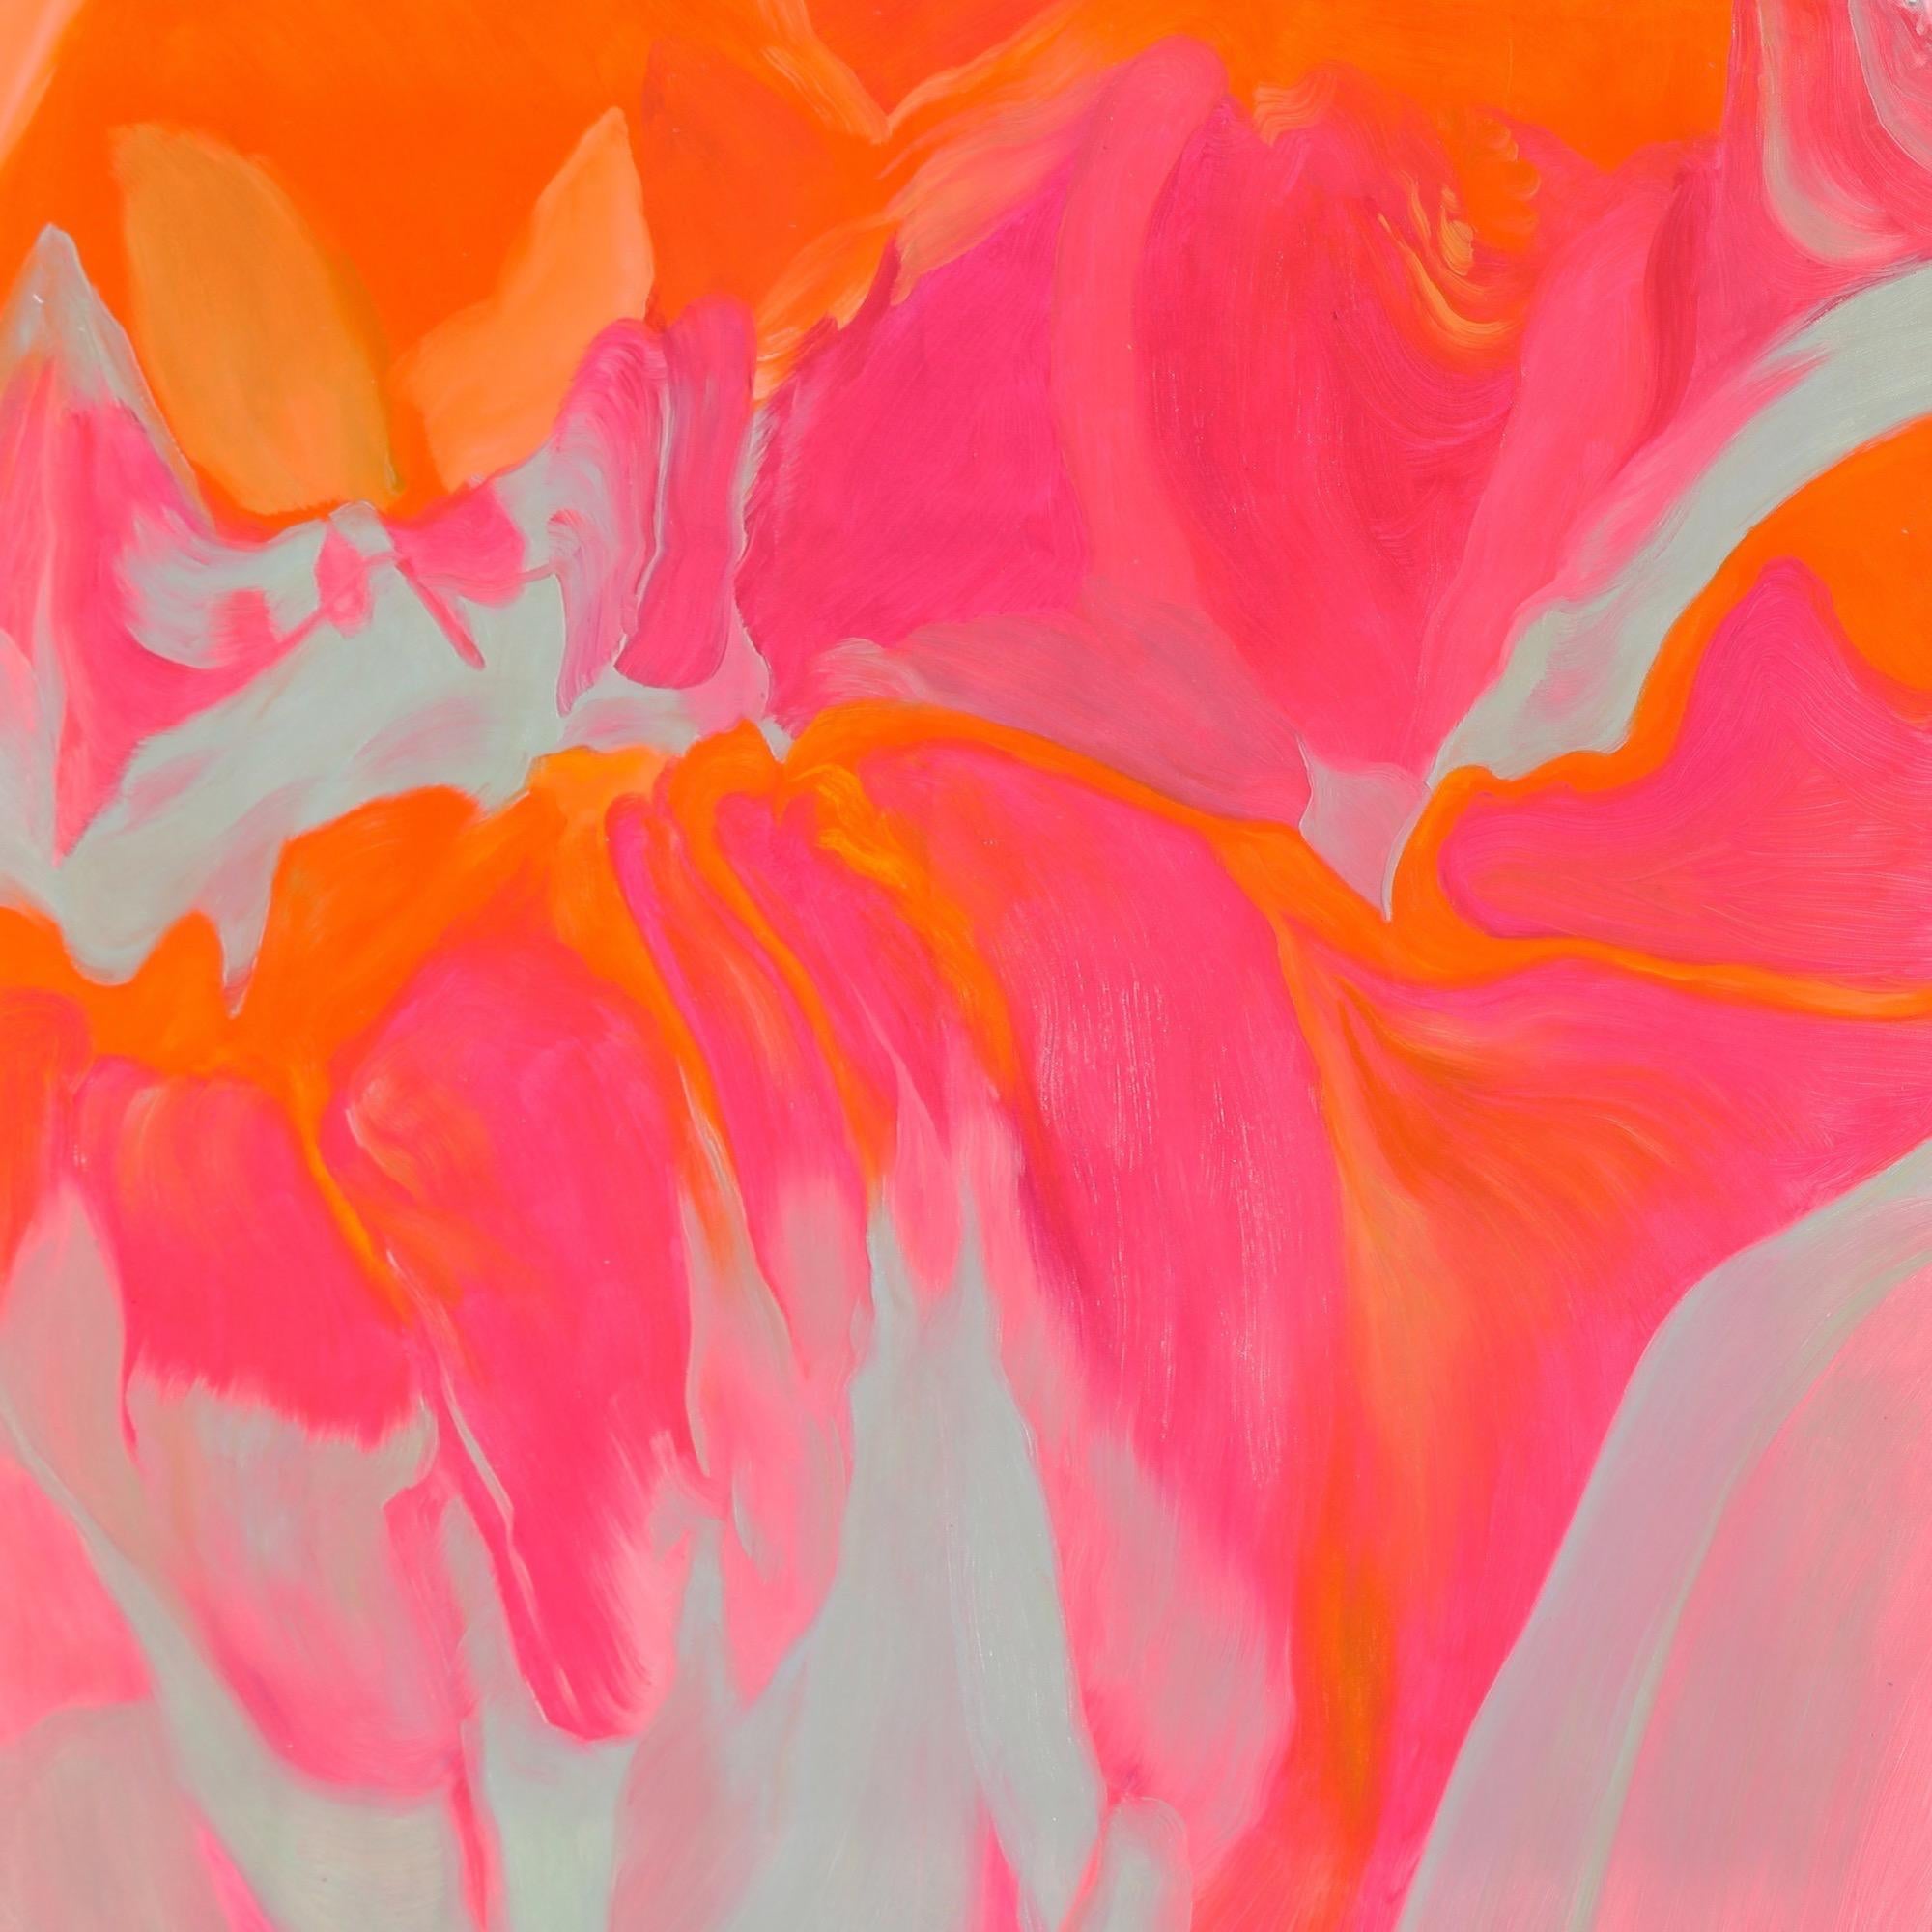 Irena Orlov Abstract Painting – Abstraktes Ölgemälde auf Leinwand 36x36, Vulkan, rot-orange, spektakulär